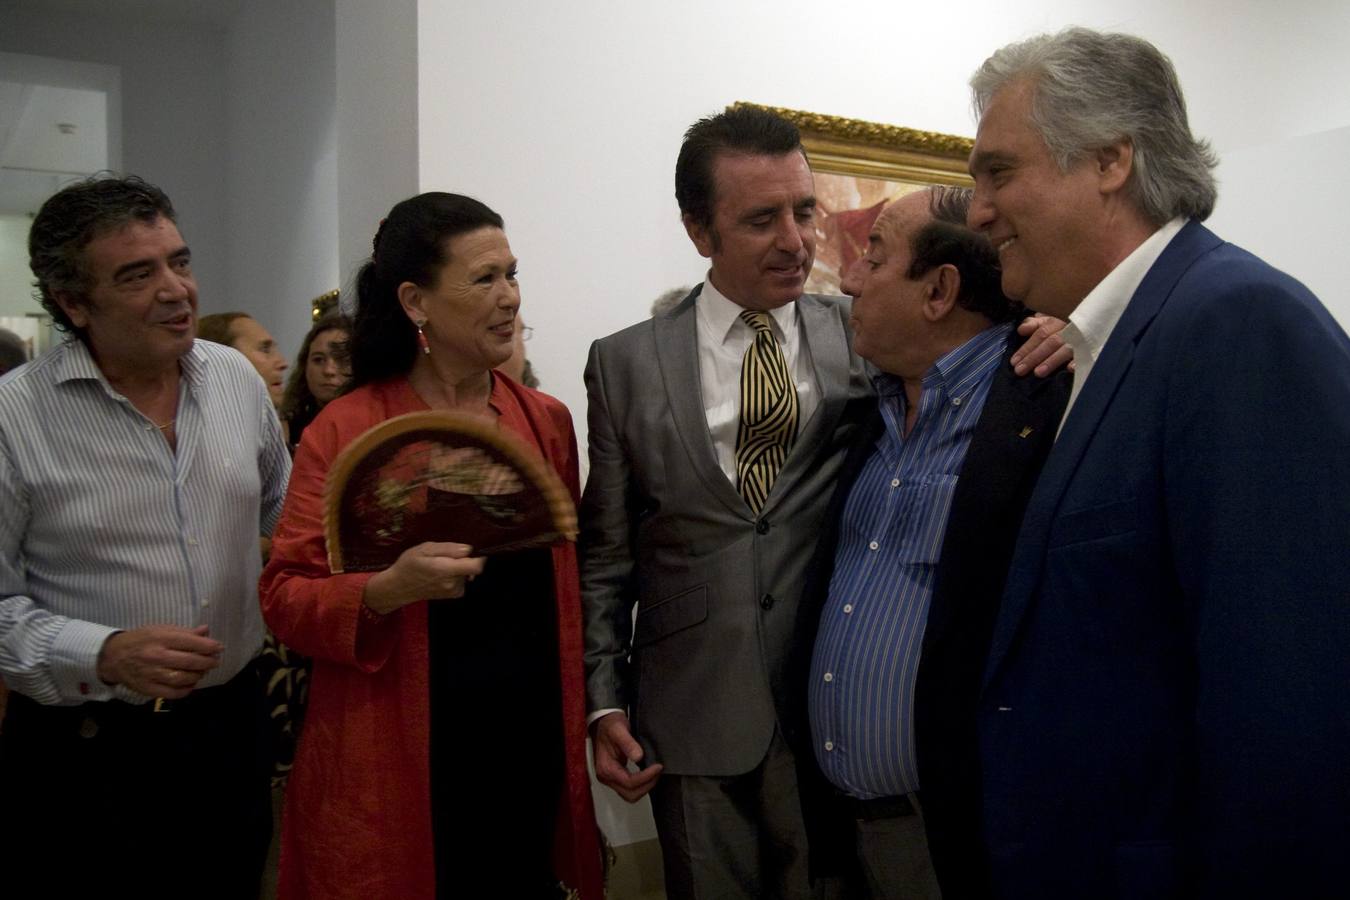 Chiquetete en una exposición junto al extorero José Ortega Cano en 2009